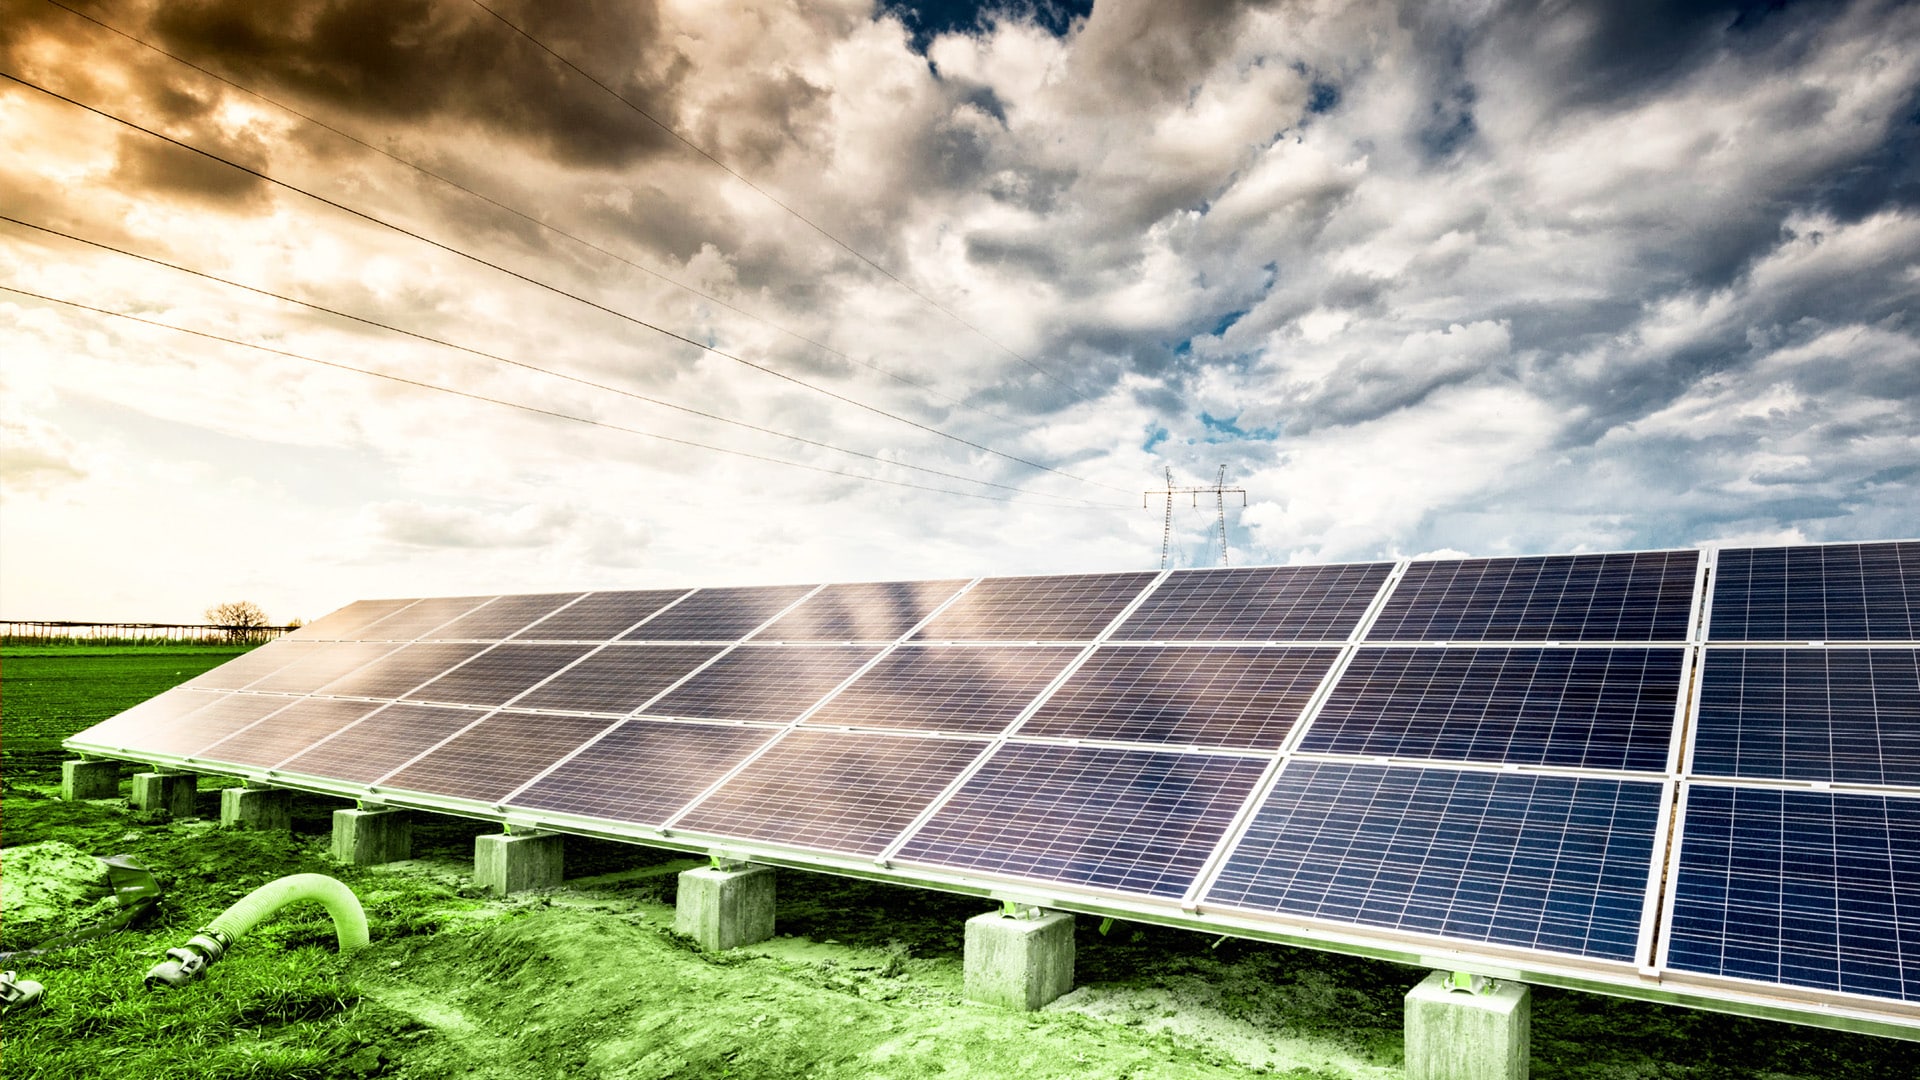 maincubes sustainability energy source solar